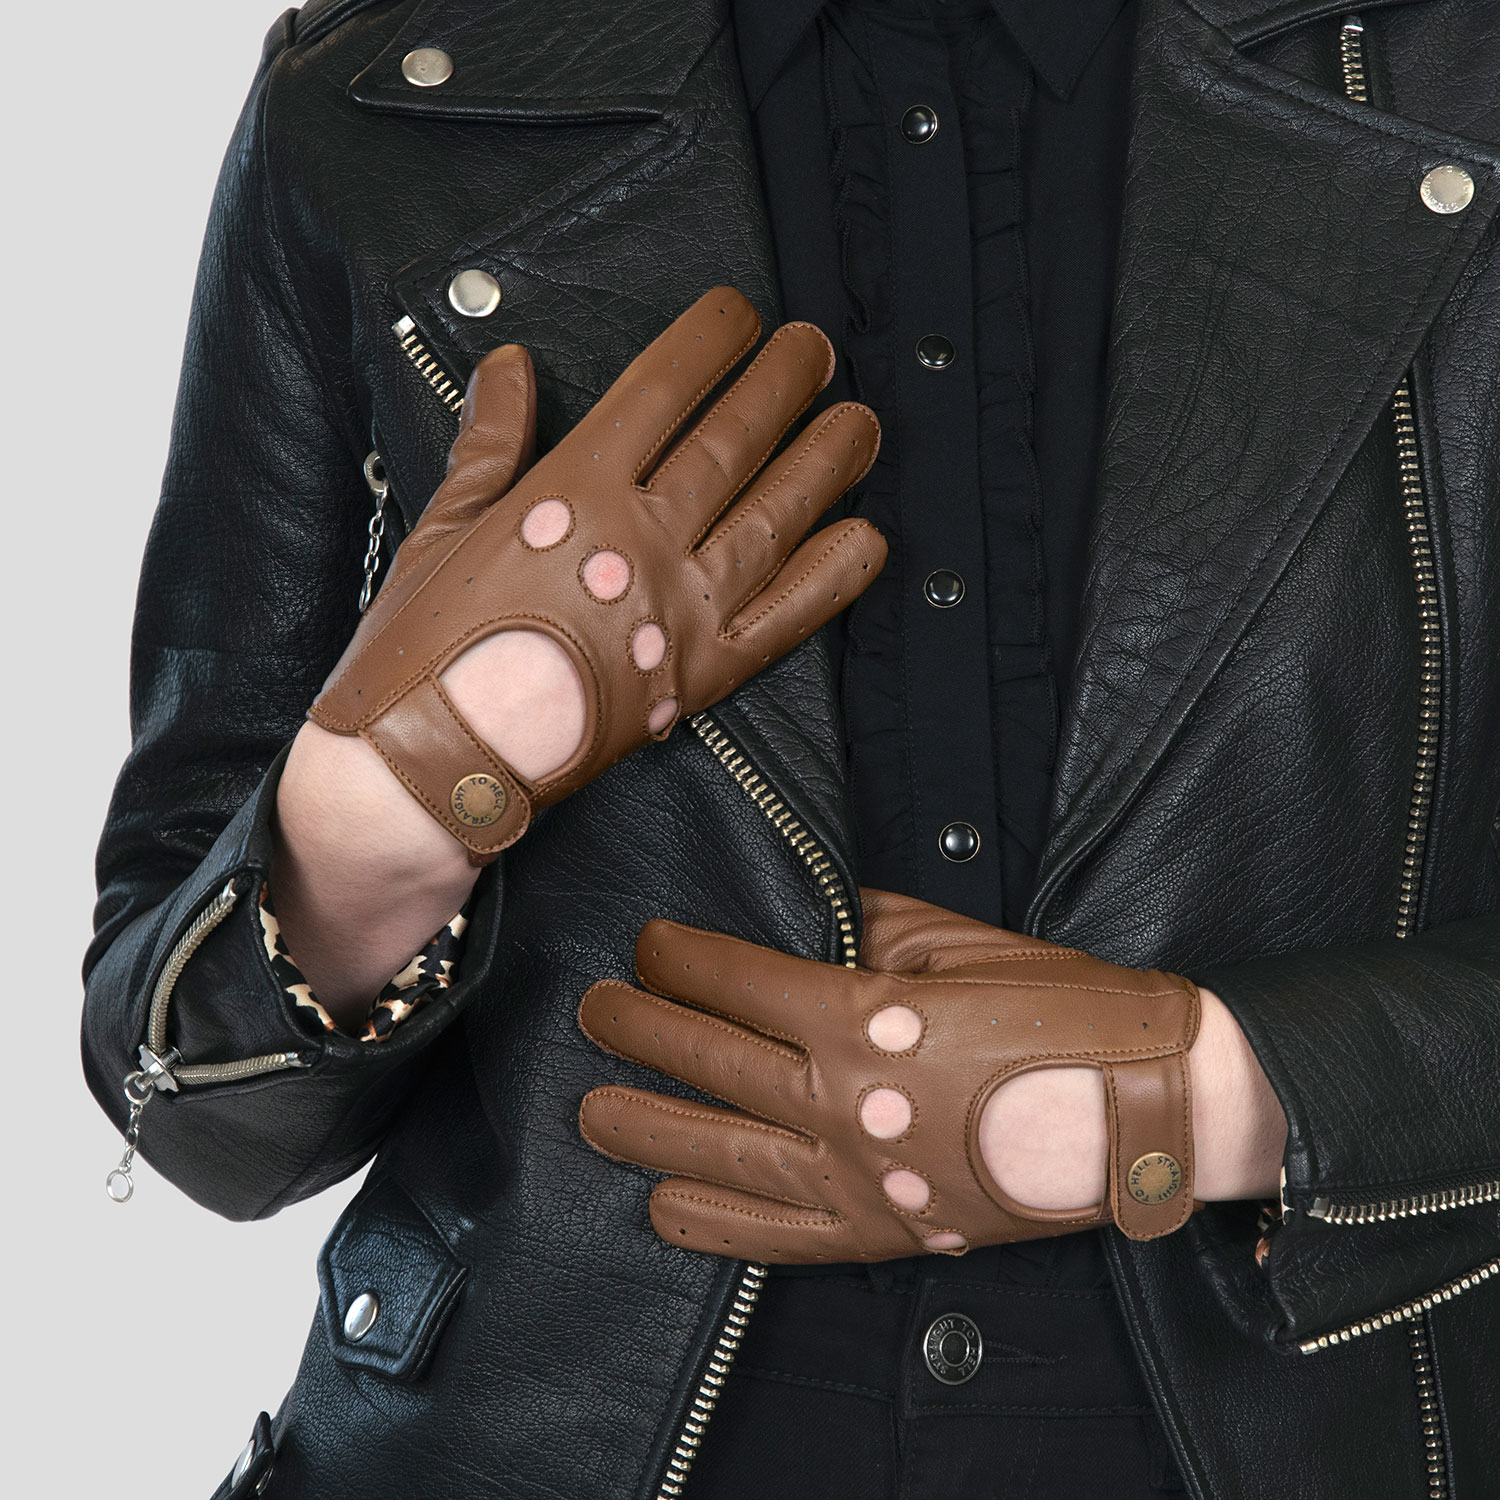 Straight to Hell Women's Bullitt Fingerless Leather Gloves